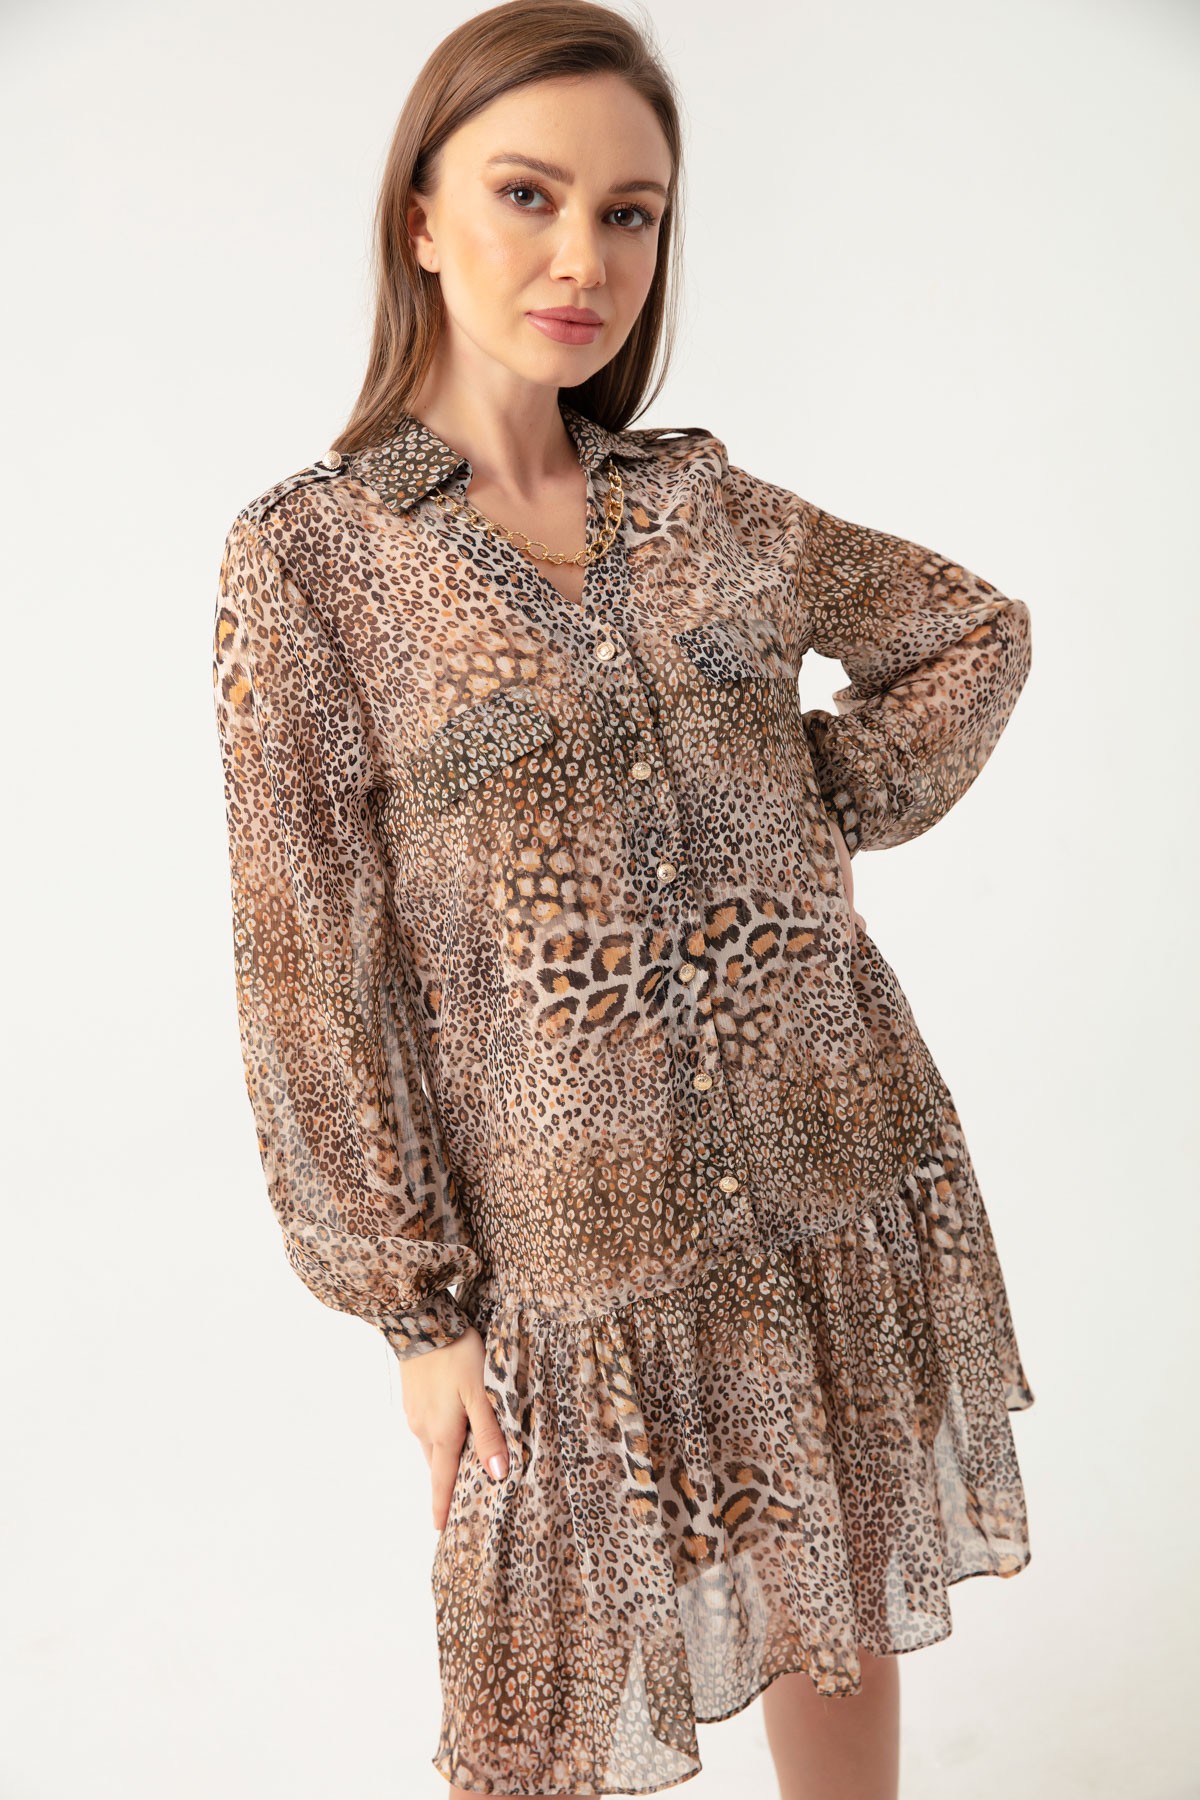 Kadın Leopar Desen Etek Ucu Fırfırlı Simli Şifon Midi Elbise - Kahverengi